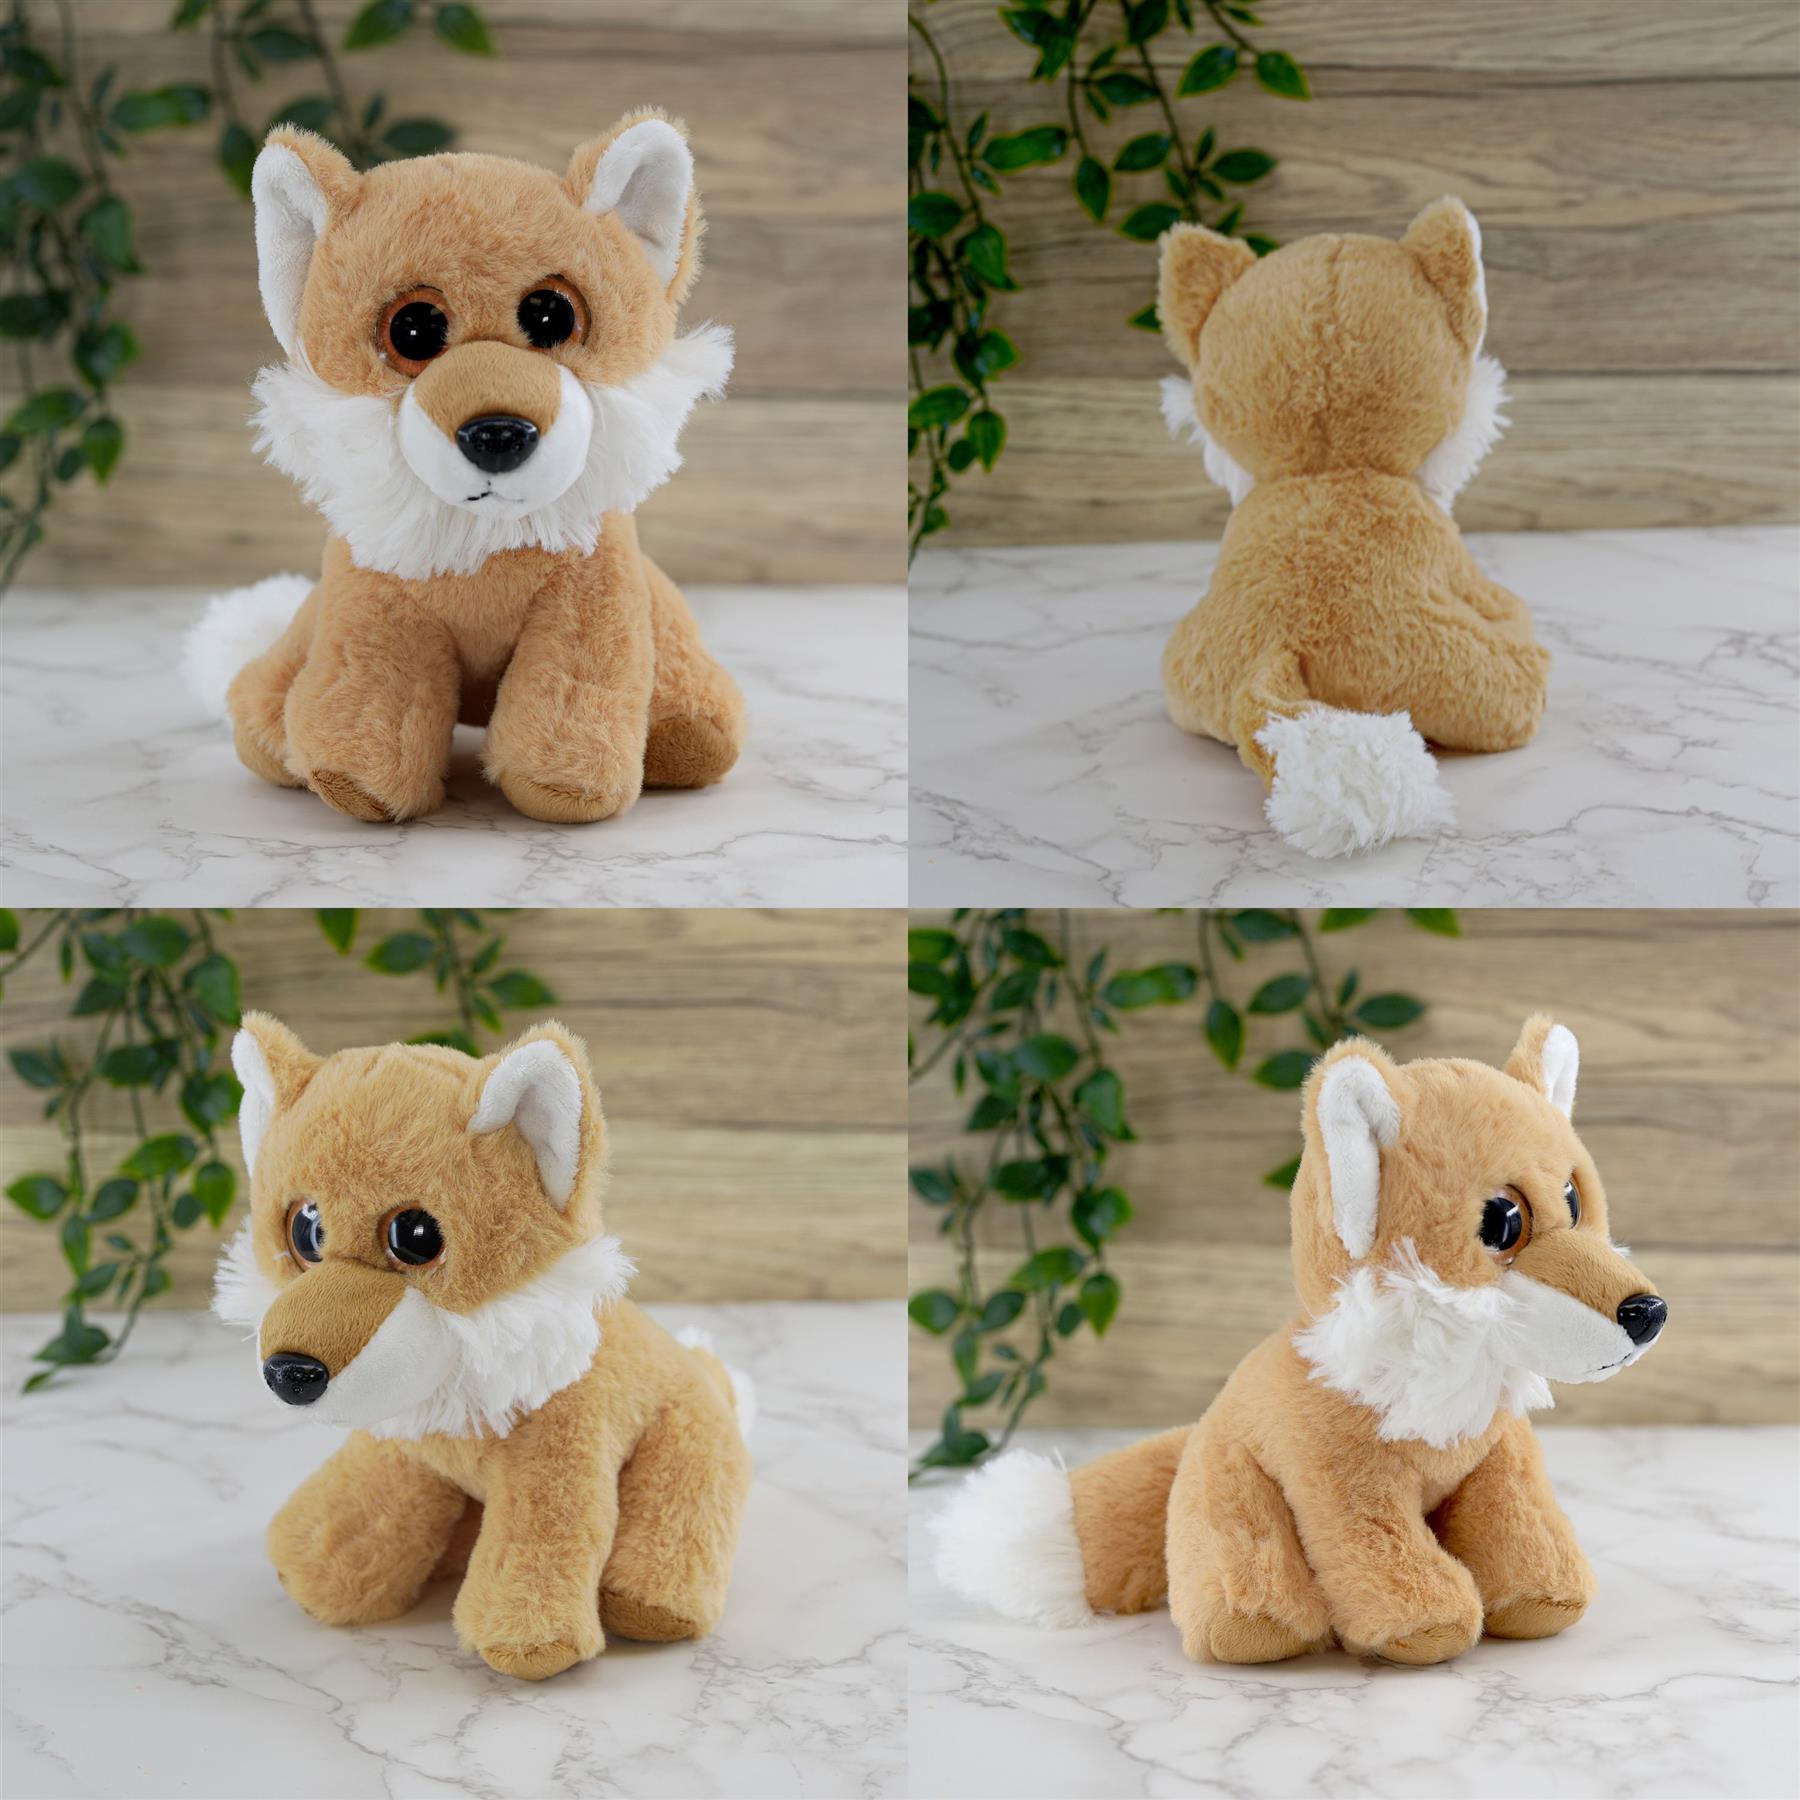 Set of 6 Soft Plush Animals Toys by The Magic Toy Shop - UKBuyZone